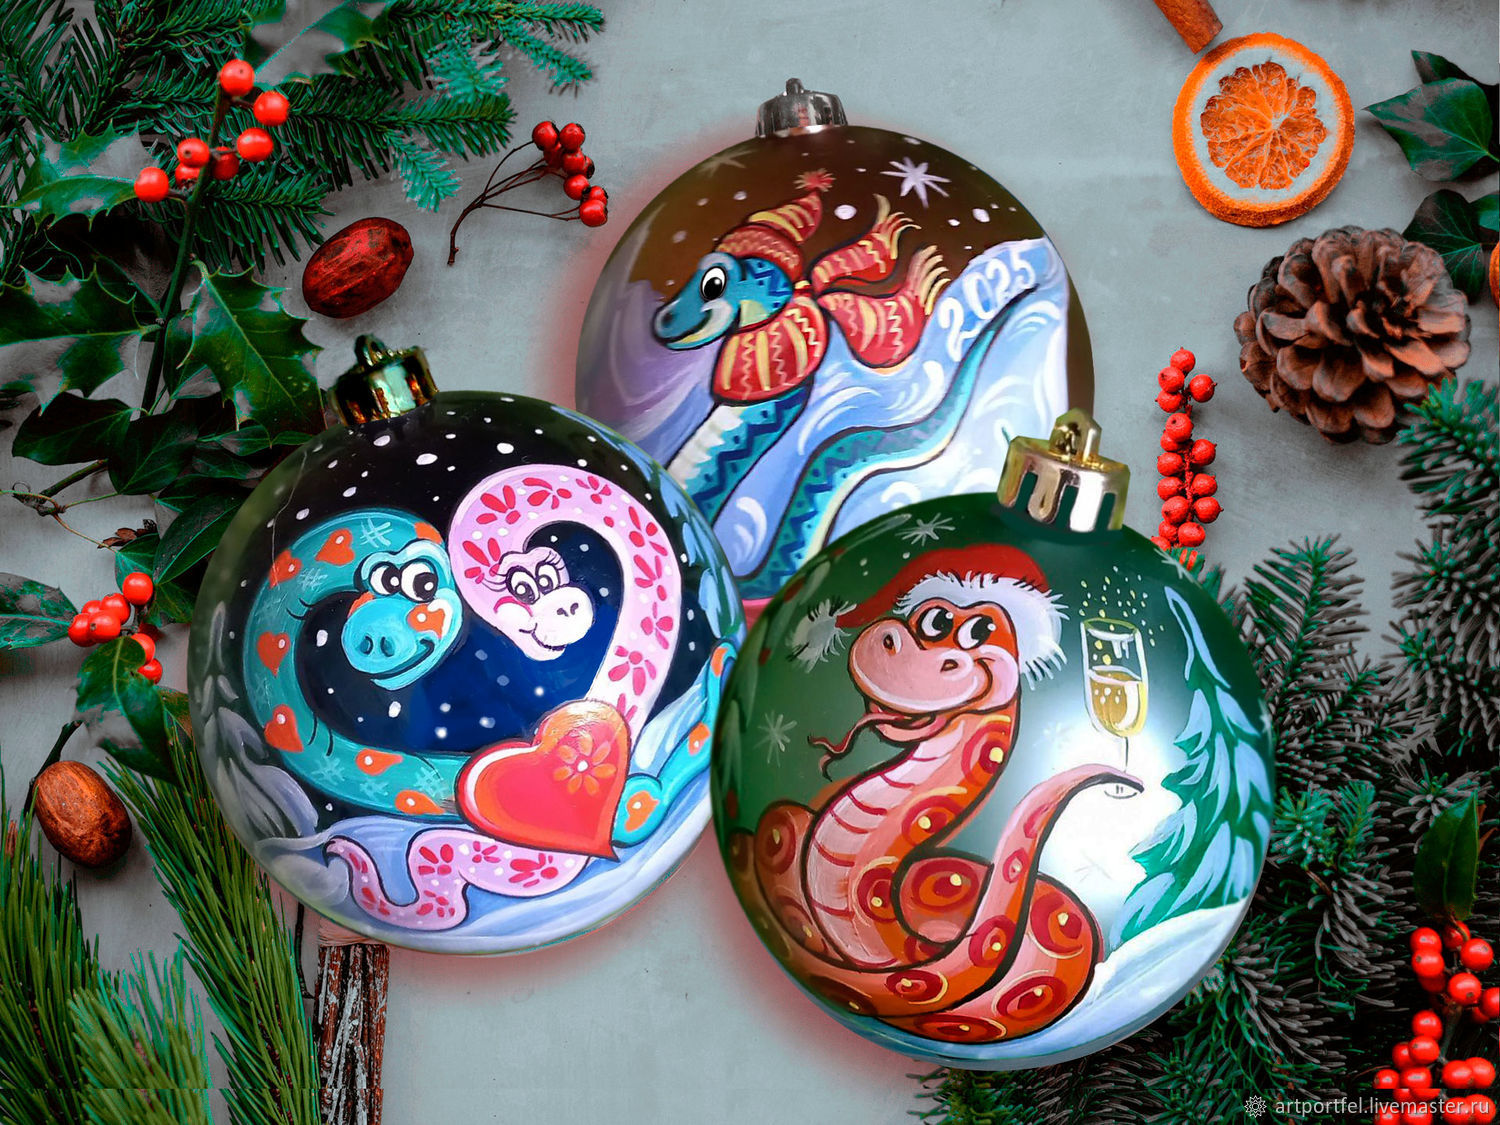 Елочные украшения, сувениры и мягкие игрушки с символом года - Змея.